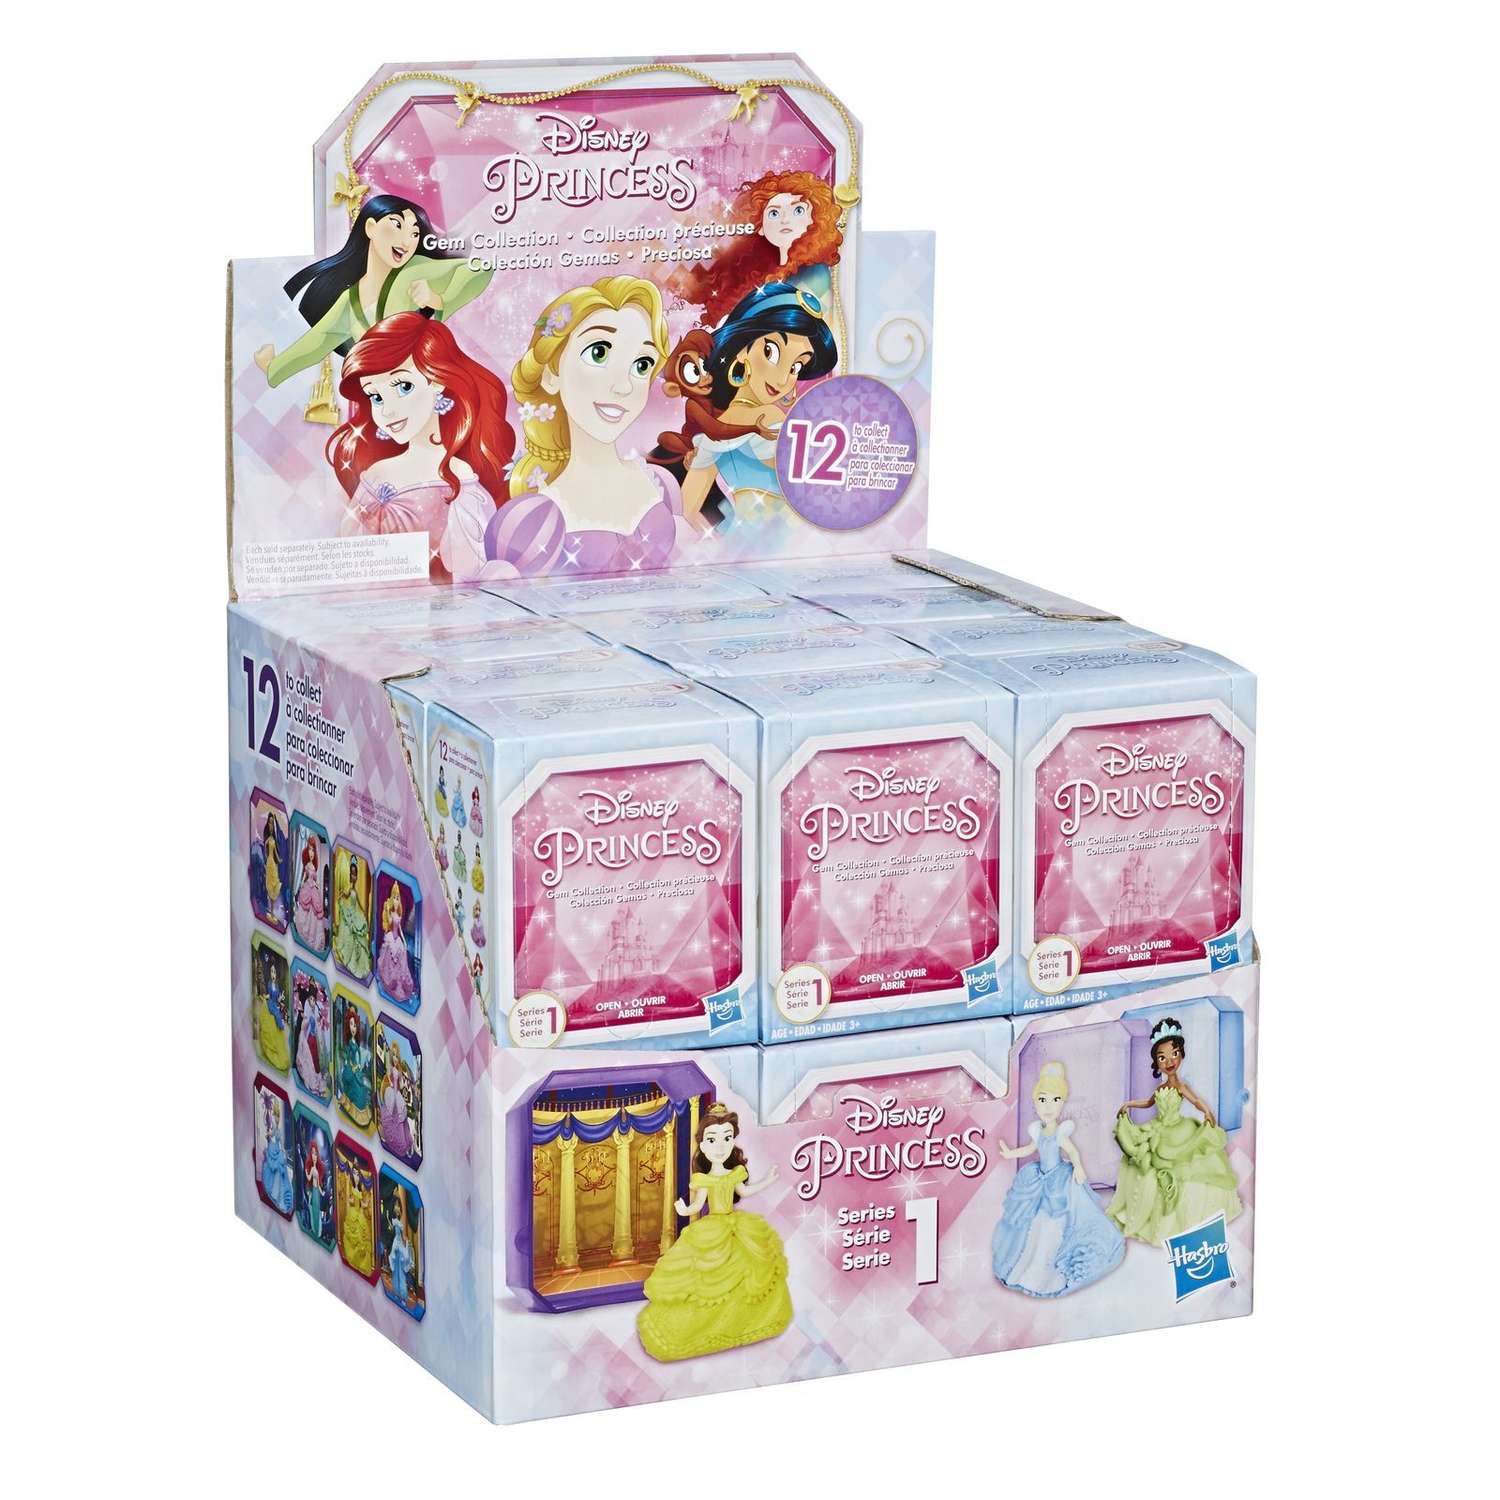 Дисней сюрпризы. Кукла Hasbro Disney Princess сюрприз. Disney Princess Hasbro коробка игрушка. Hasbro Disney Princess фигурка сюрприз. Hasbro Дисней принцесса бокс сюрприз.